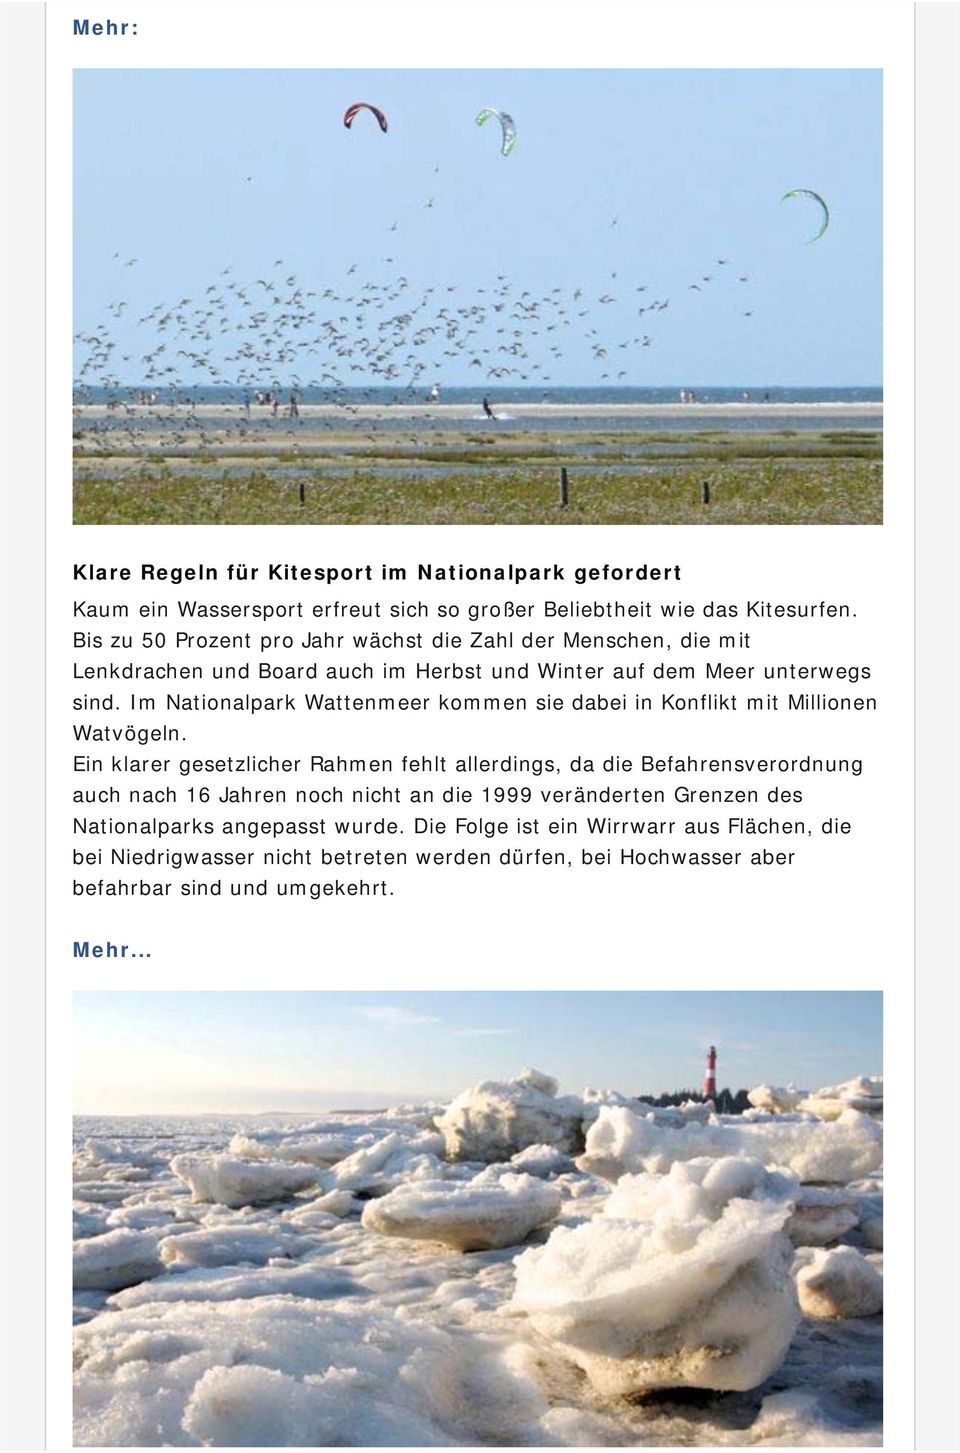 Im Nationalpark Wattenmeer kommen sie dabei in Konflikt mit Millionen Watvögeln.